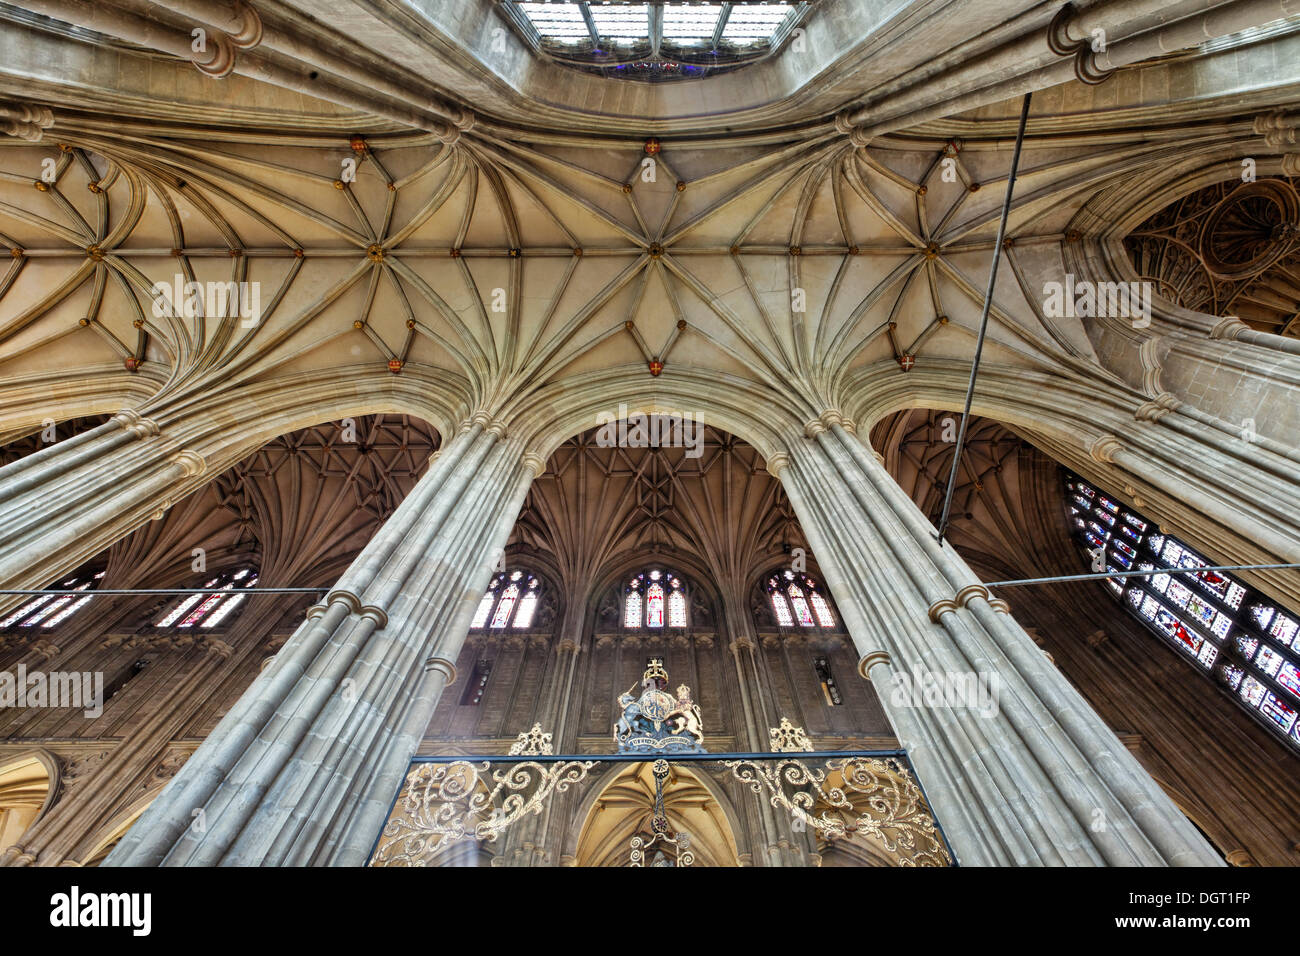 La Cathédrale de Canterbury, nef, Angleterre du Sud-Est, de l'administration du comté de Kent, Angleterre, Royaume-Uni, Europe Banque D'Images